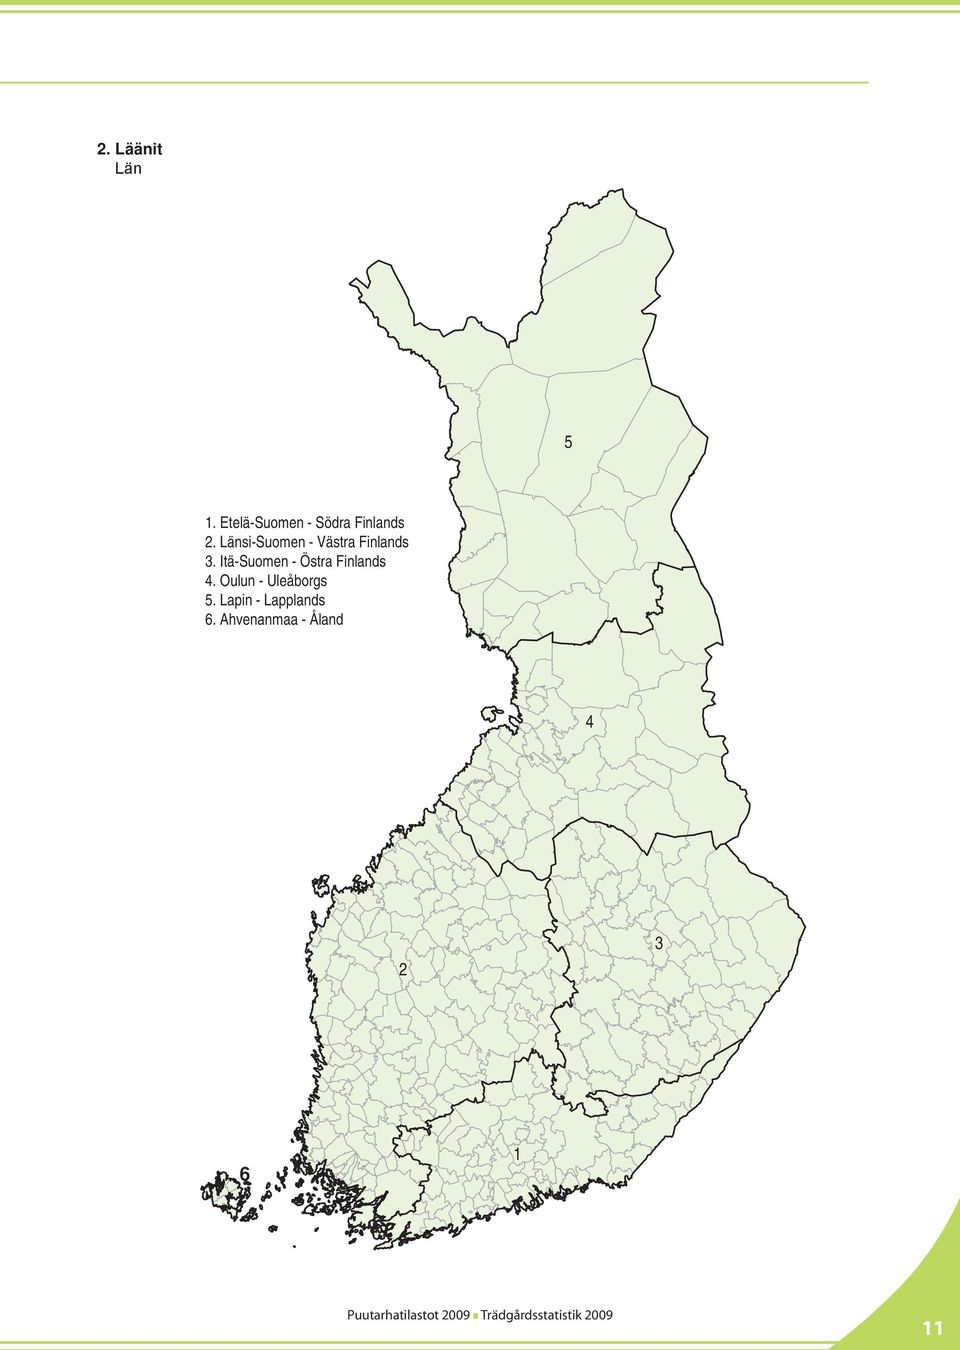 Länsi-Suomen - Västra Finlands 3.